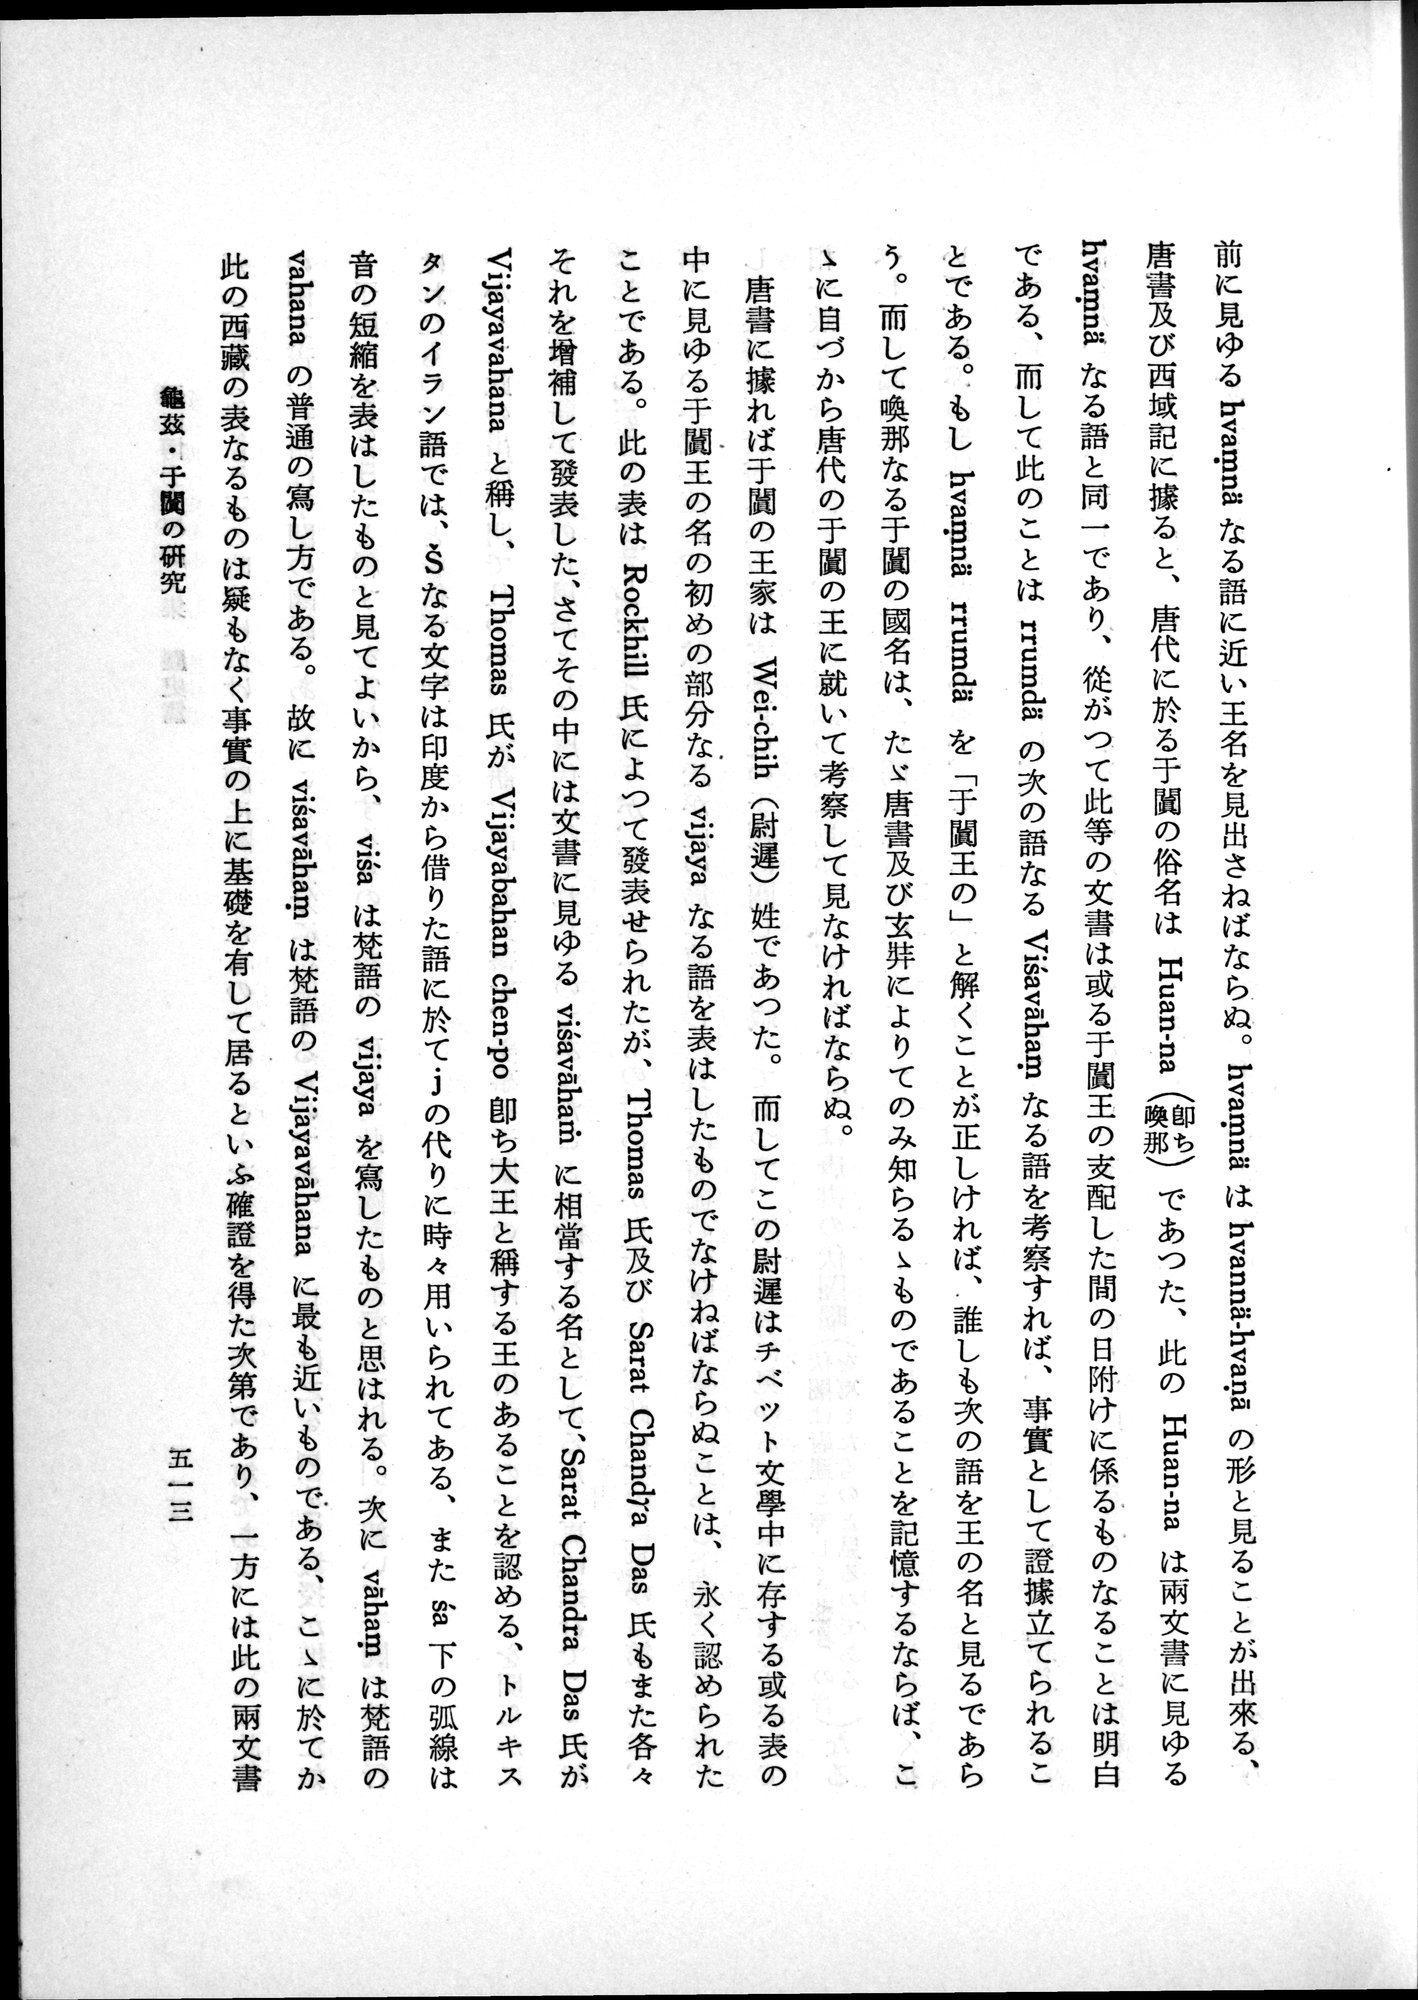 羽田博士史学論文集 : vol.1 / Page 551 (Grayscale High Resolution Image)